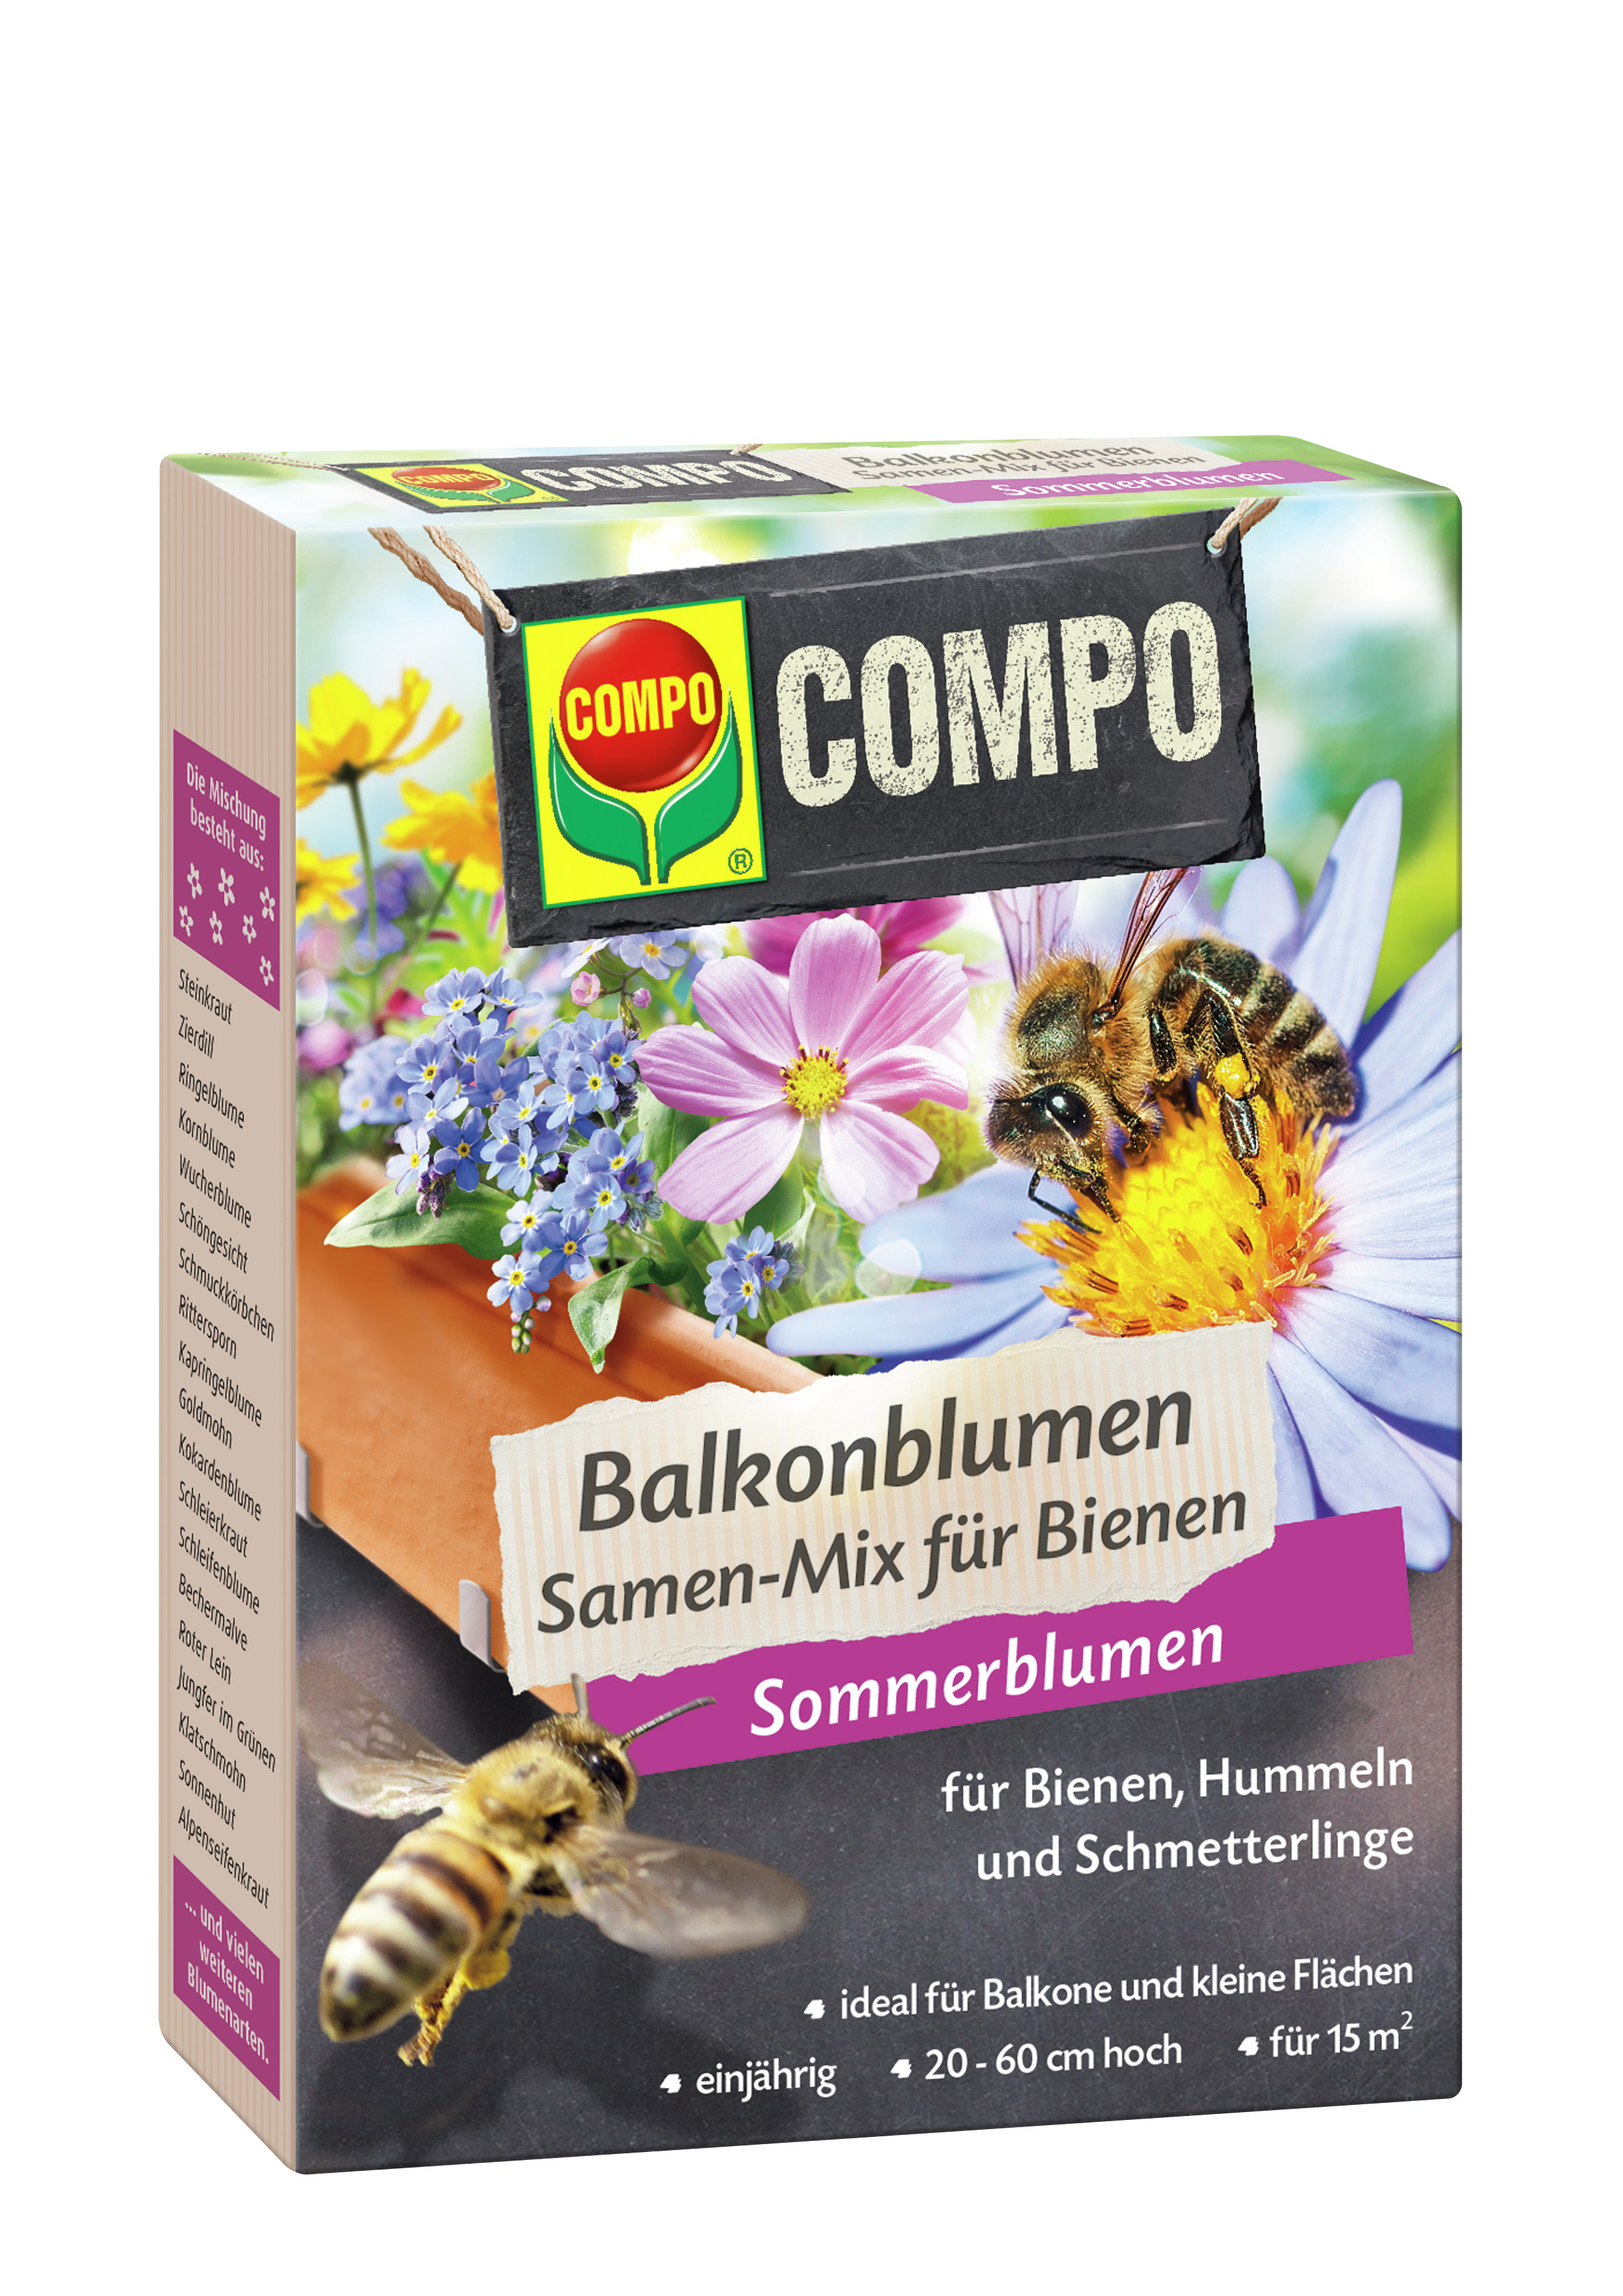 COMPO Balkonblumen Samen-Mix für Bienen, 100 g